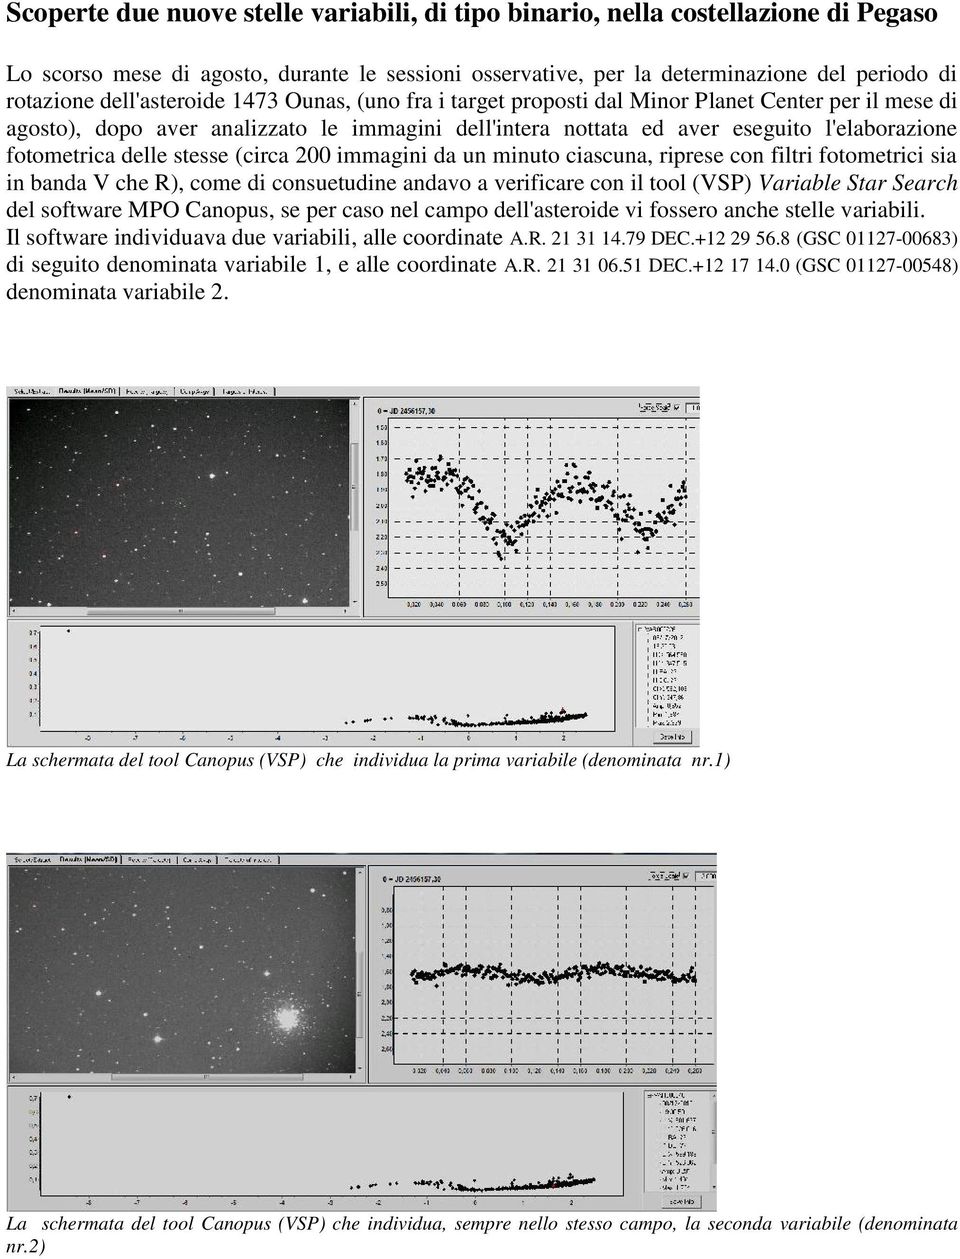 delle stesse (circa 200 immagini da un minuto ciascuna, riprese con filtri fotometrici sia in banda V che R), come di consuetudine andavo a verificare con il tool (VSP) Variable Star Search del